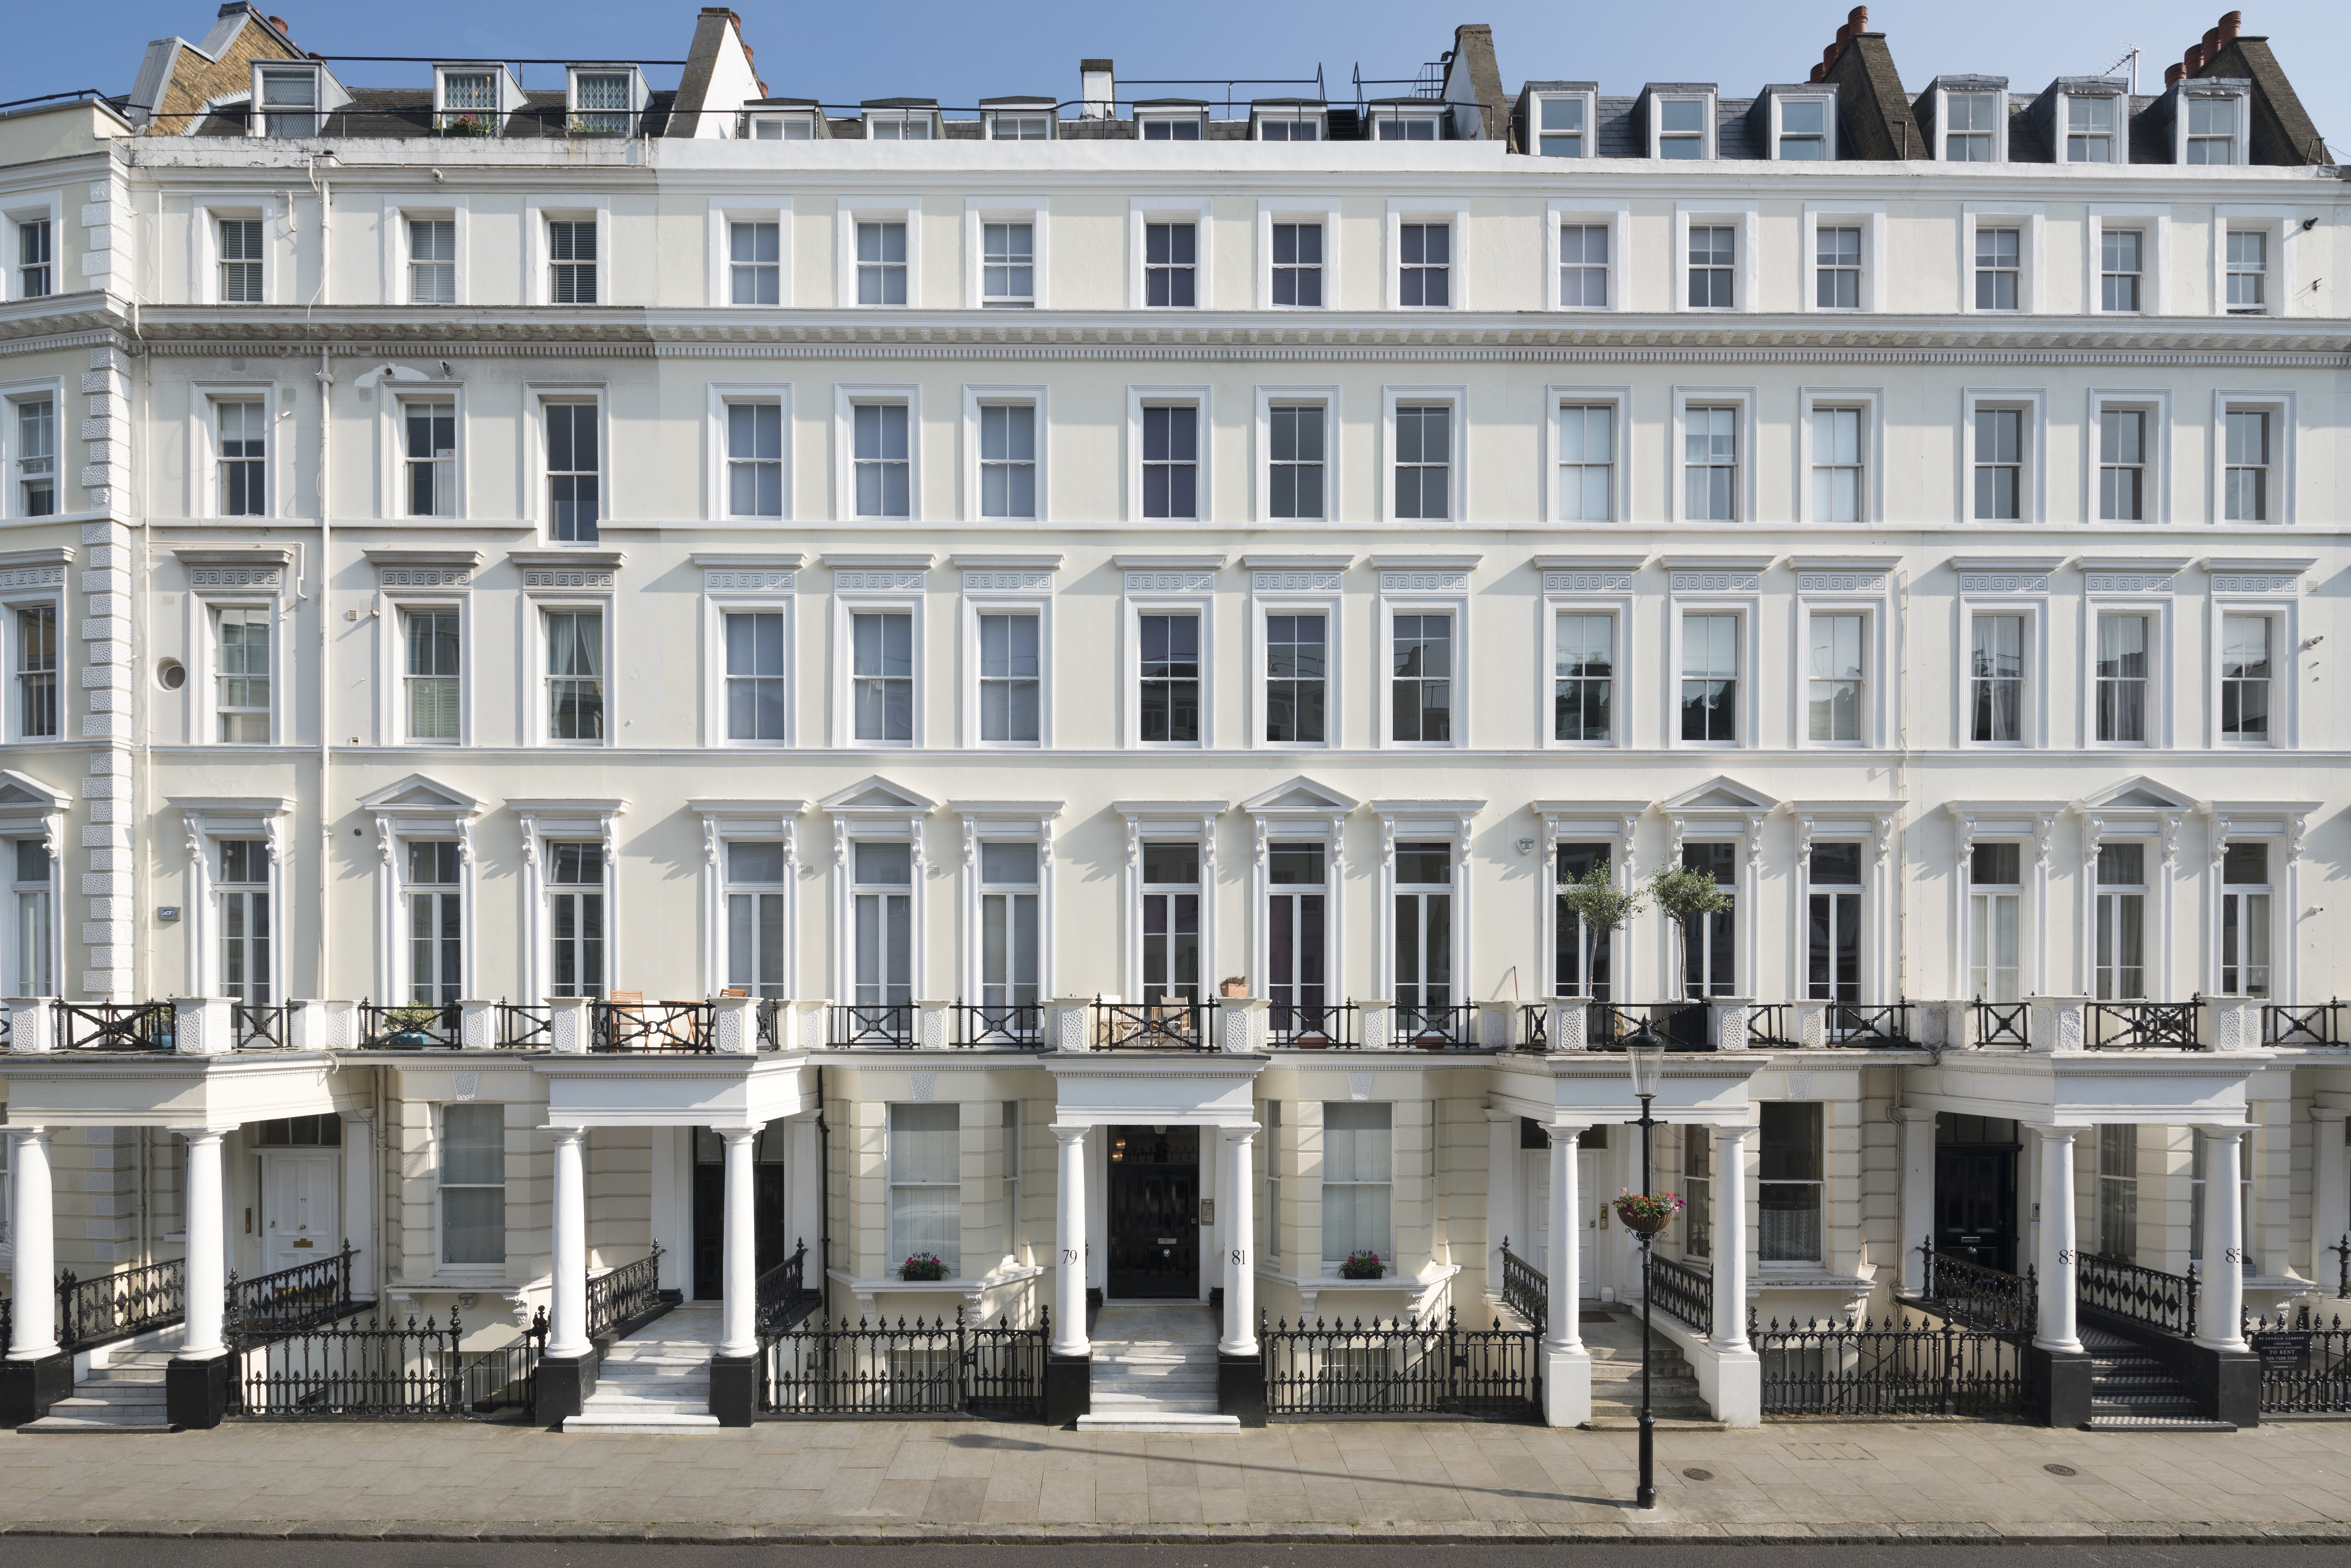 Stunning rare residential investment or break-up opportunity in prime Kensington